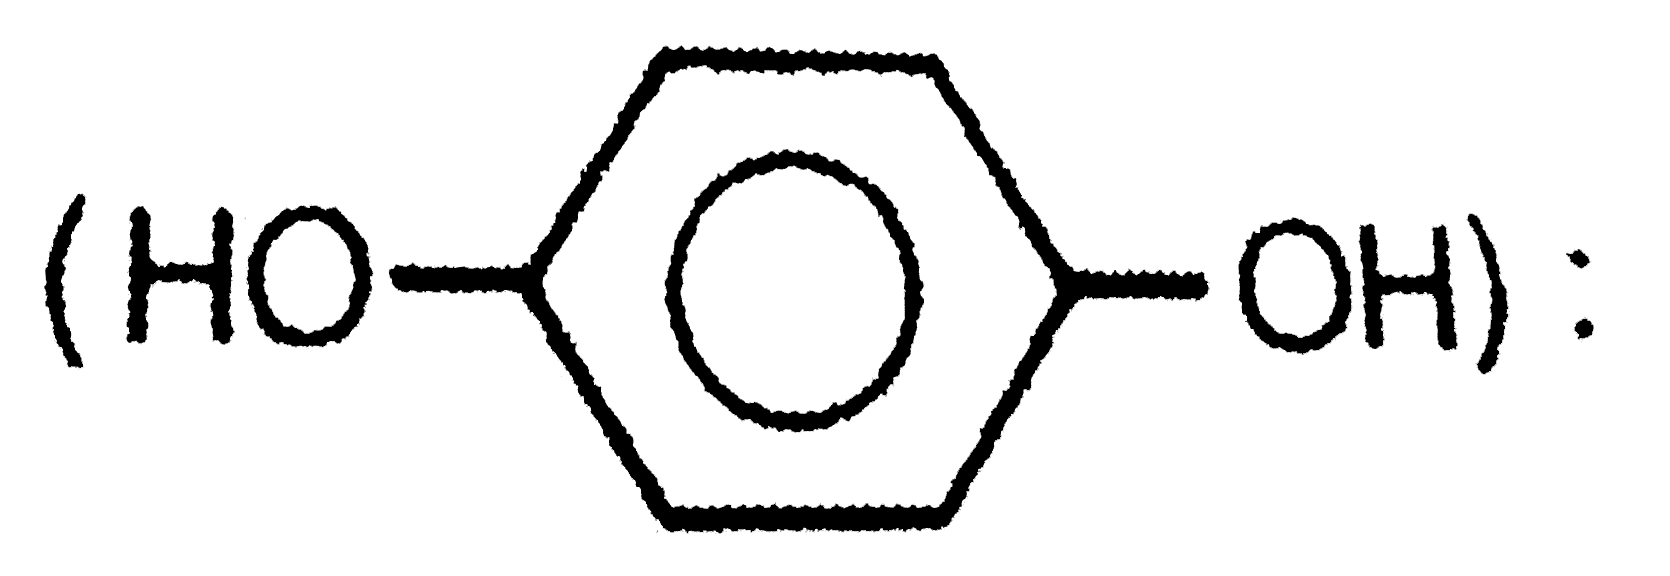 IUPAC name of quinol